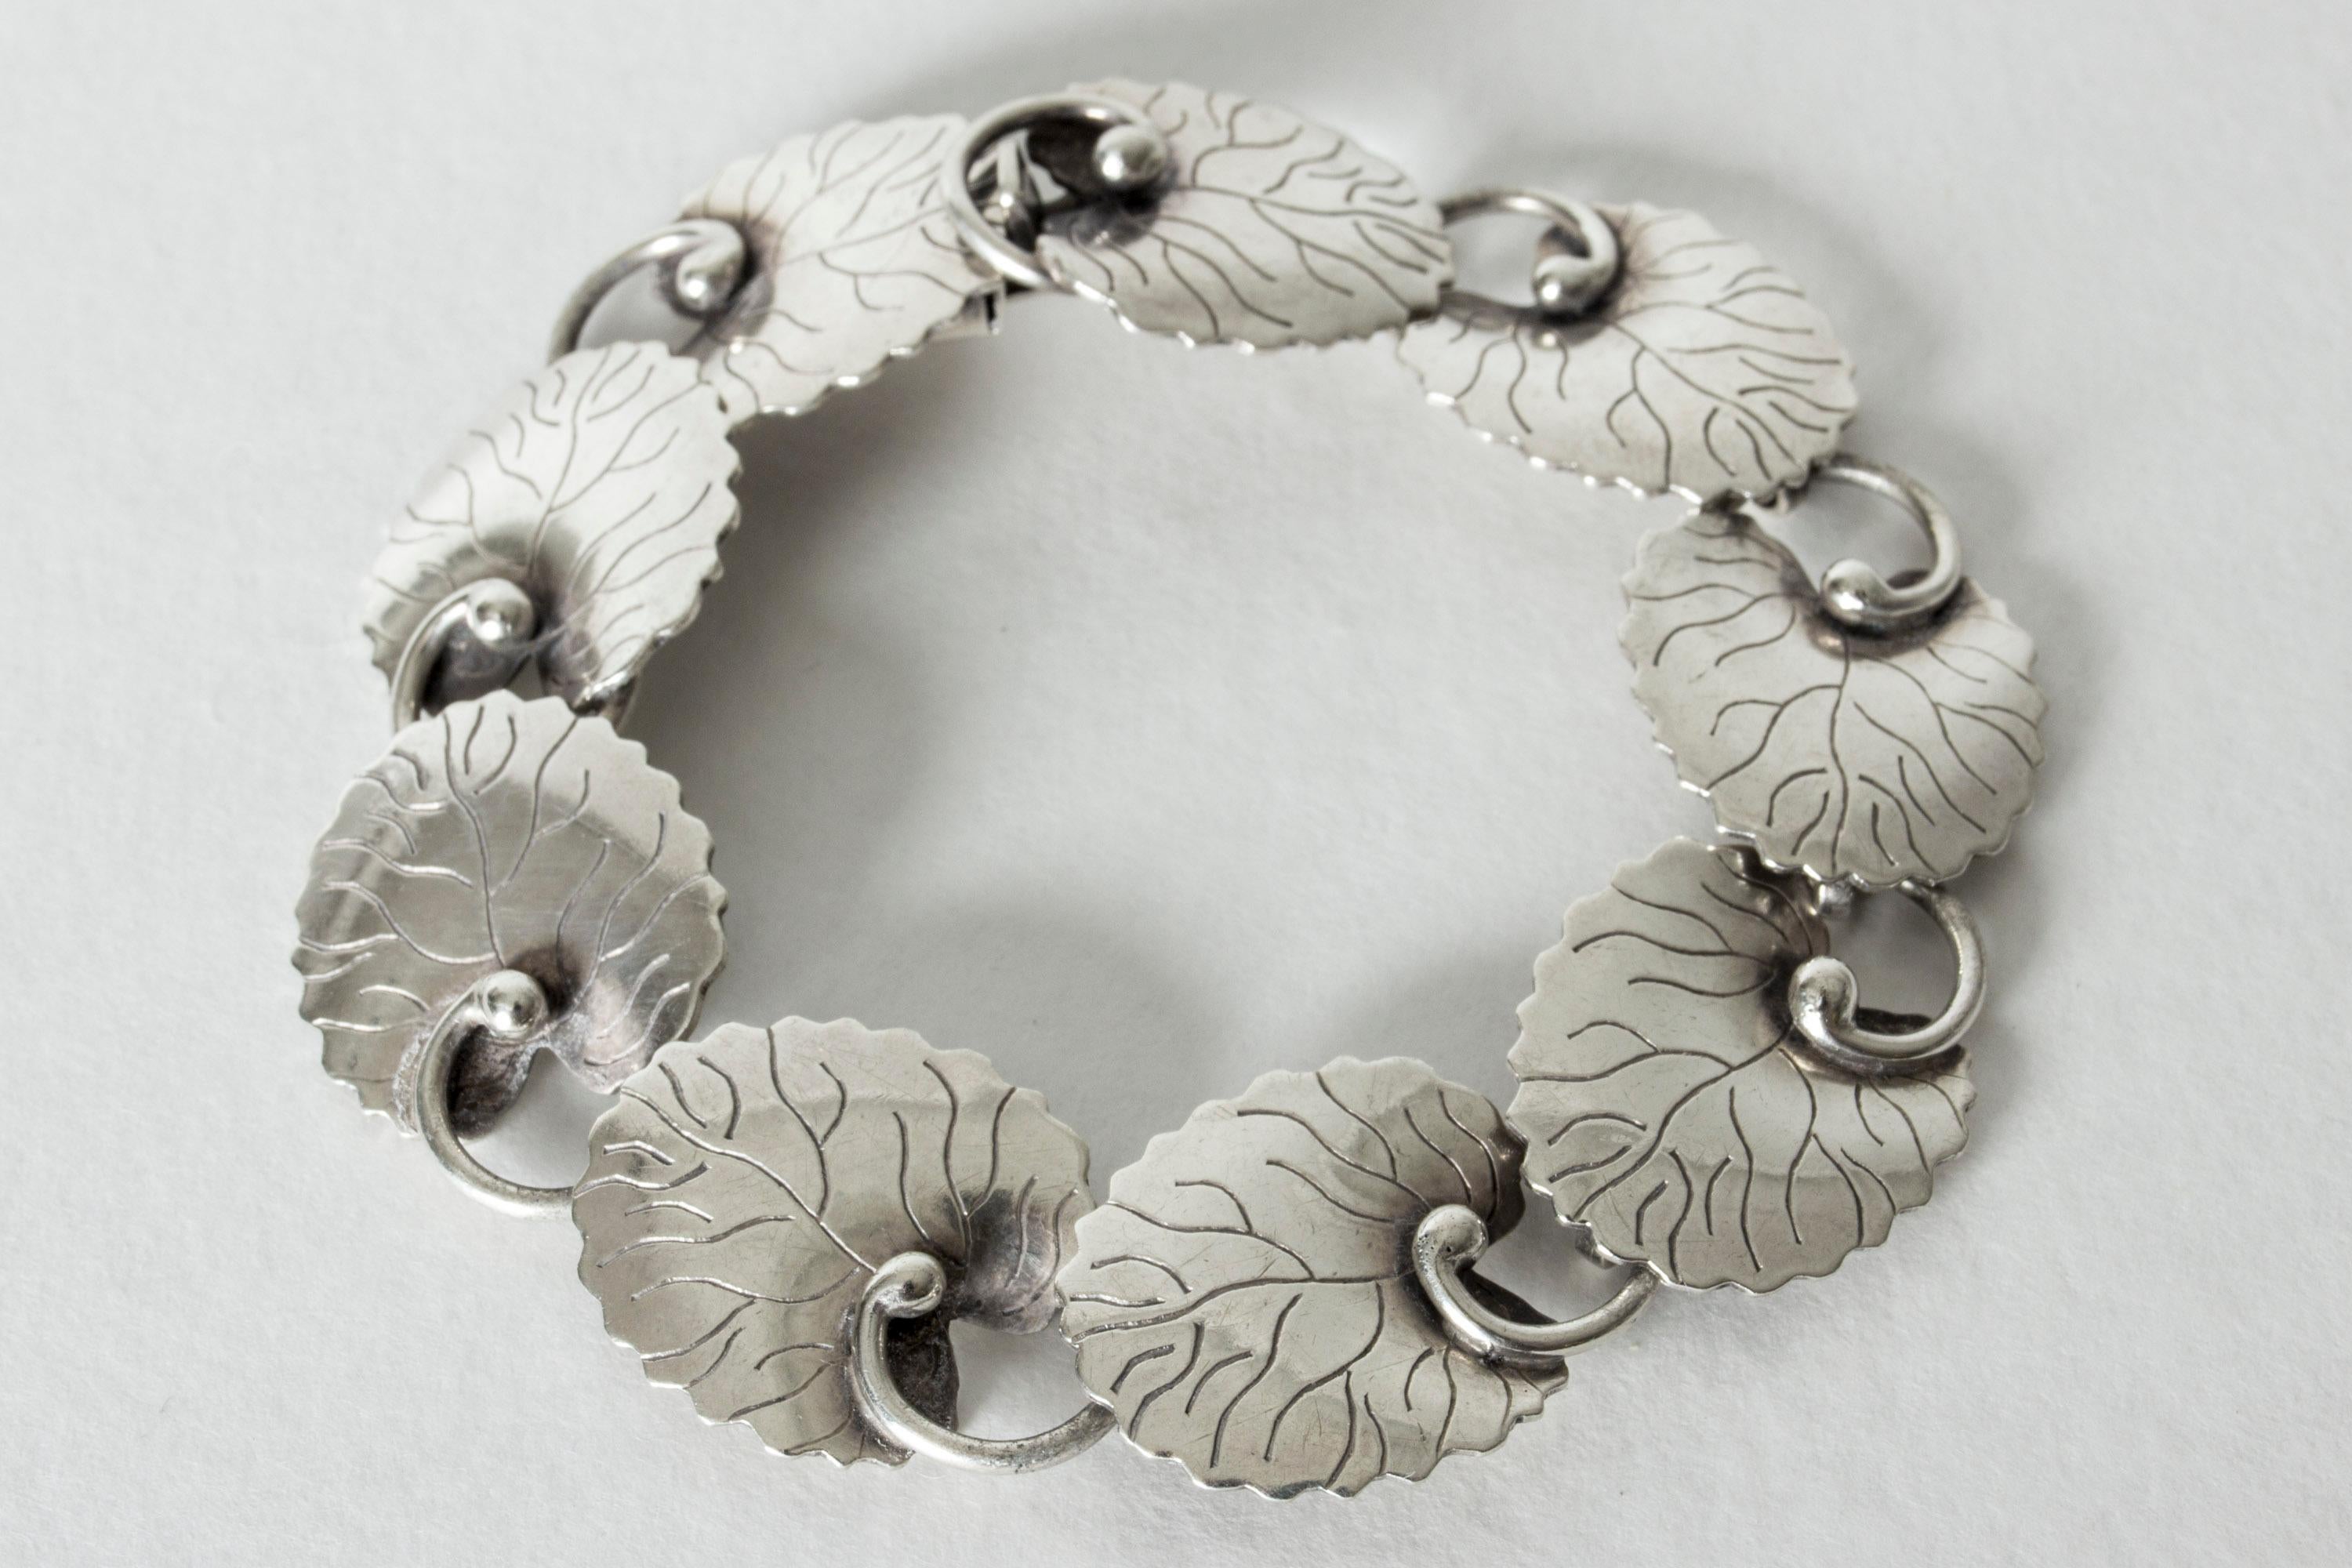 Women's or Men's Silver Bracelet by Arvo Saarela, Sweden, 1954